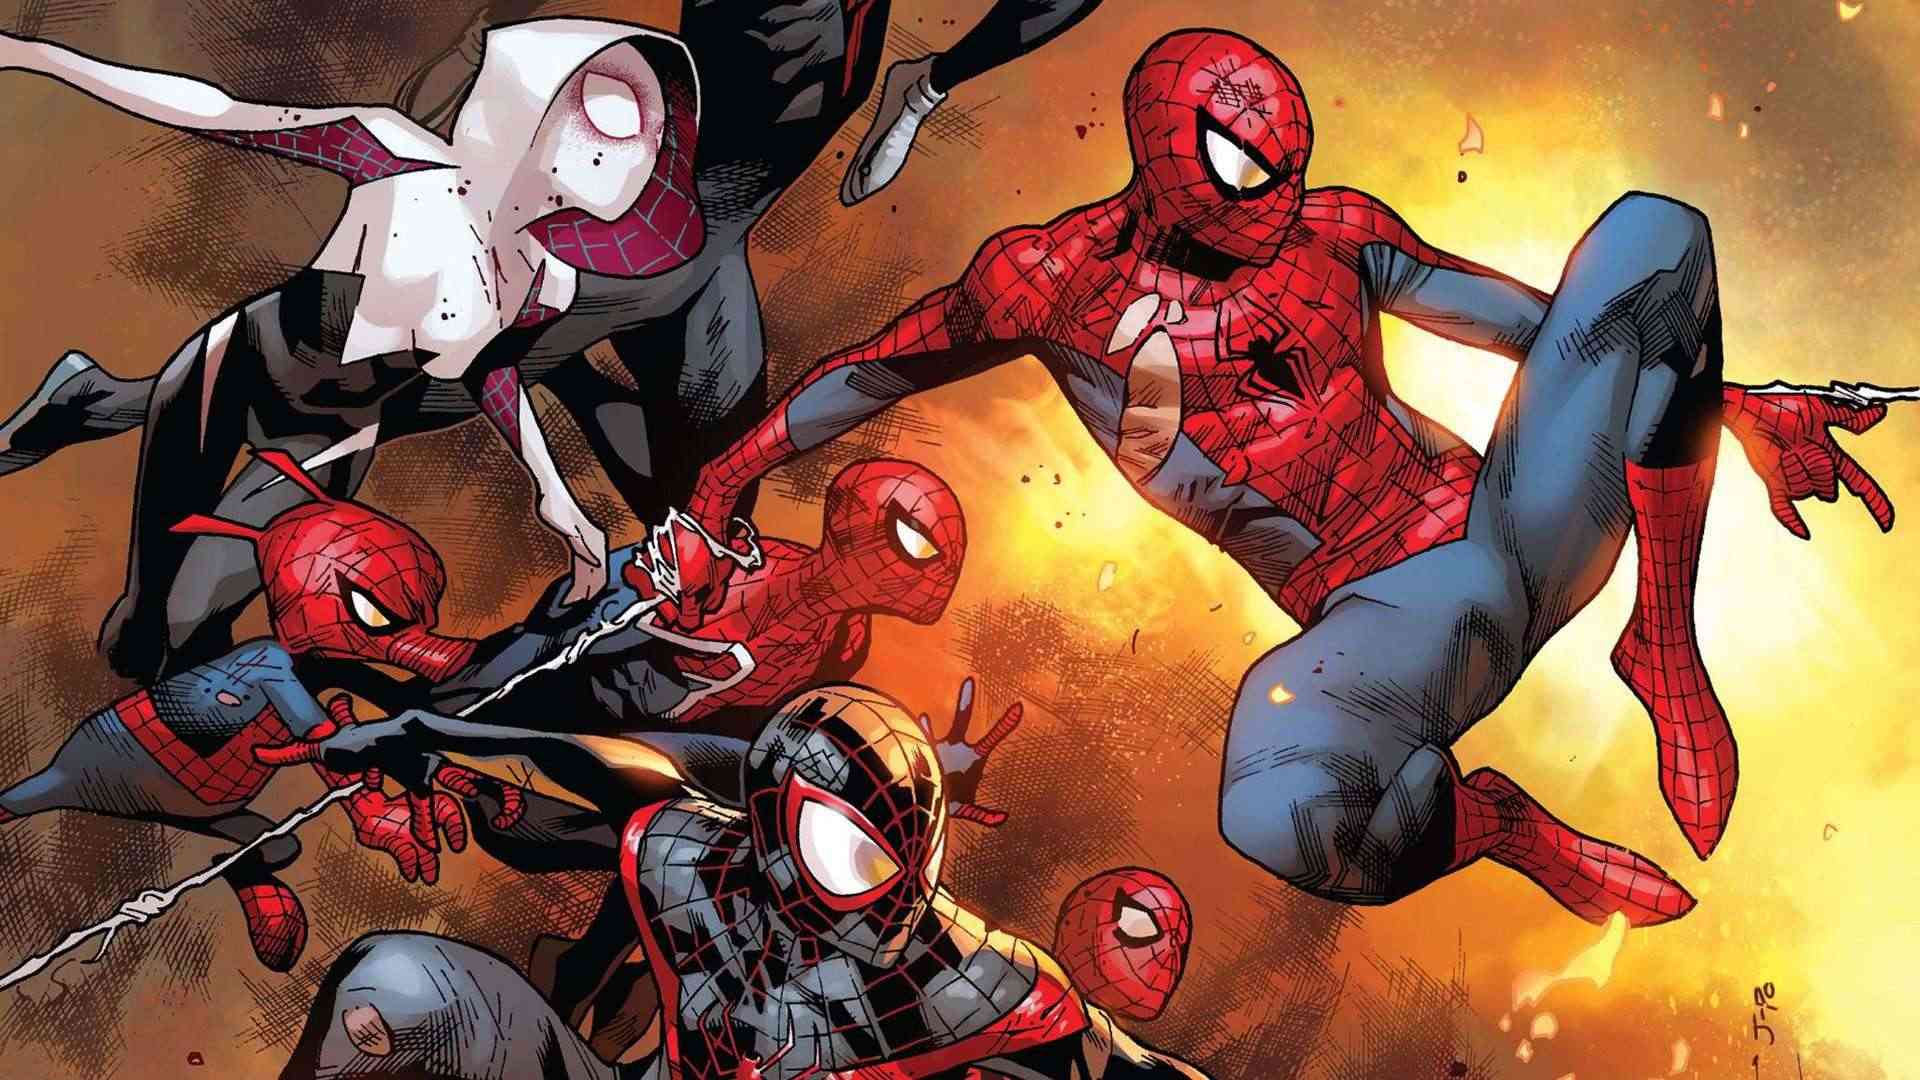 Xem Spider-Man quá 180 phút, một cậu bé để cho Nhện cắn nhập viện